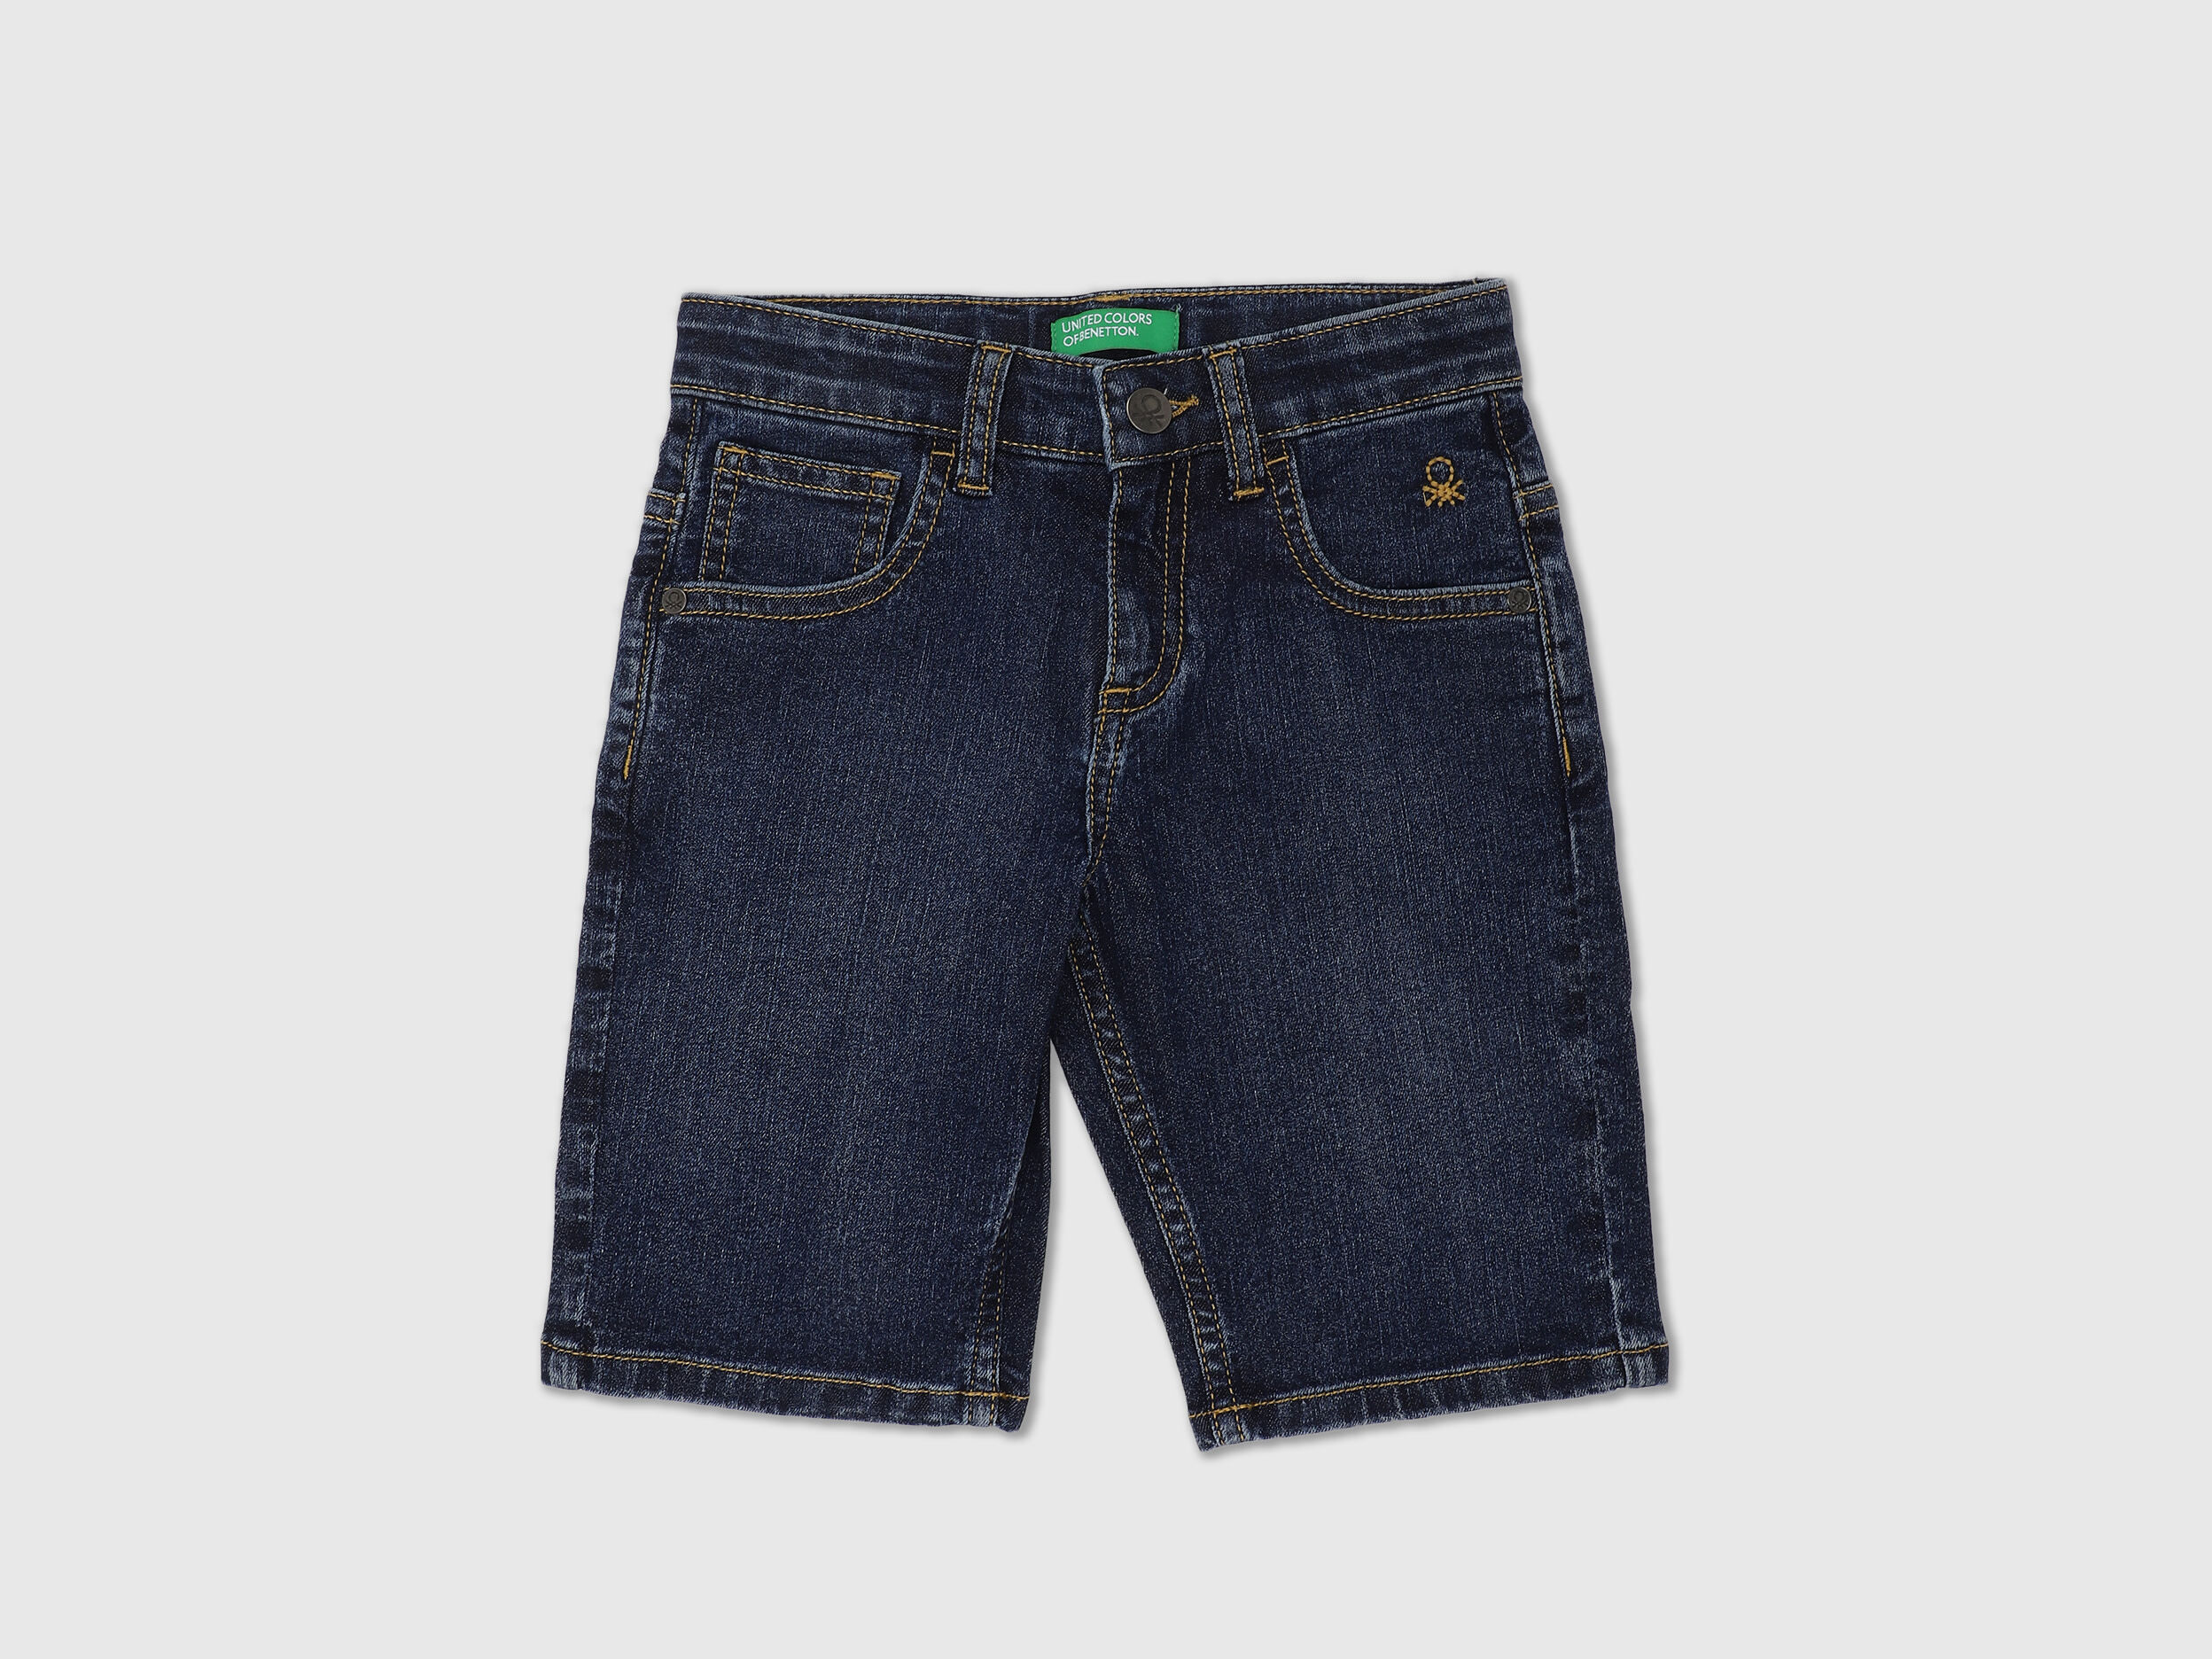 Benetton boys benetton shorts age 6-7 years 